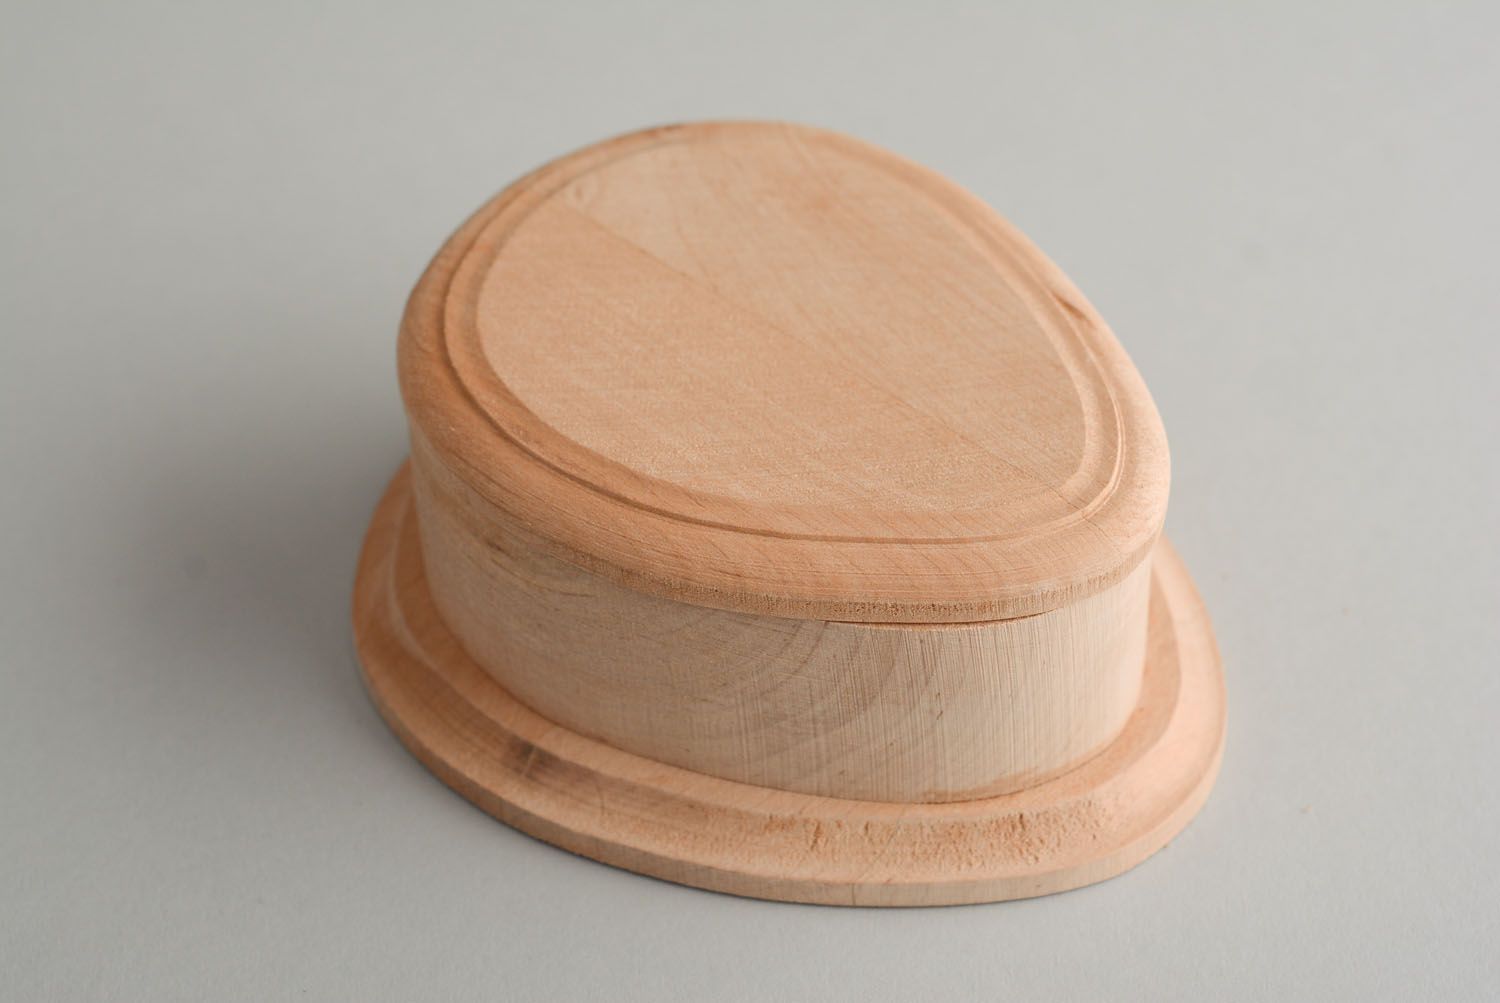 Cajita de madera con forma del huevo foto 2